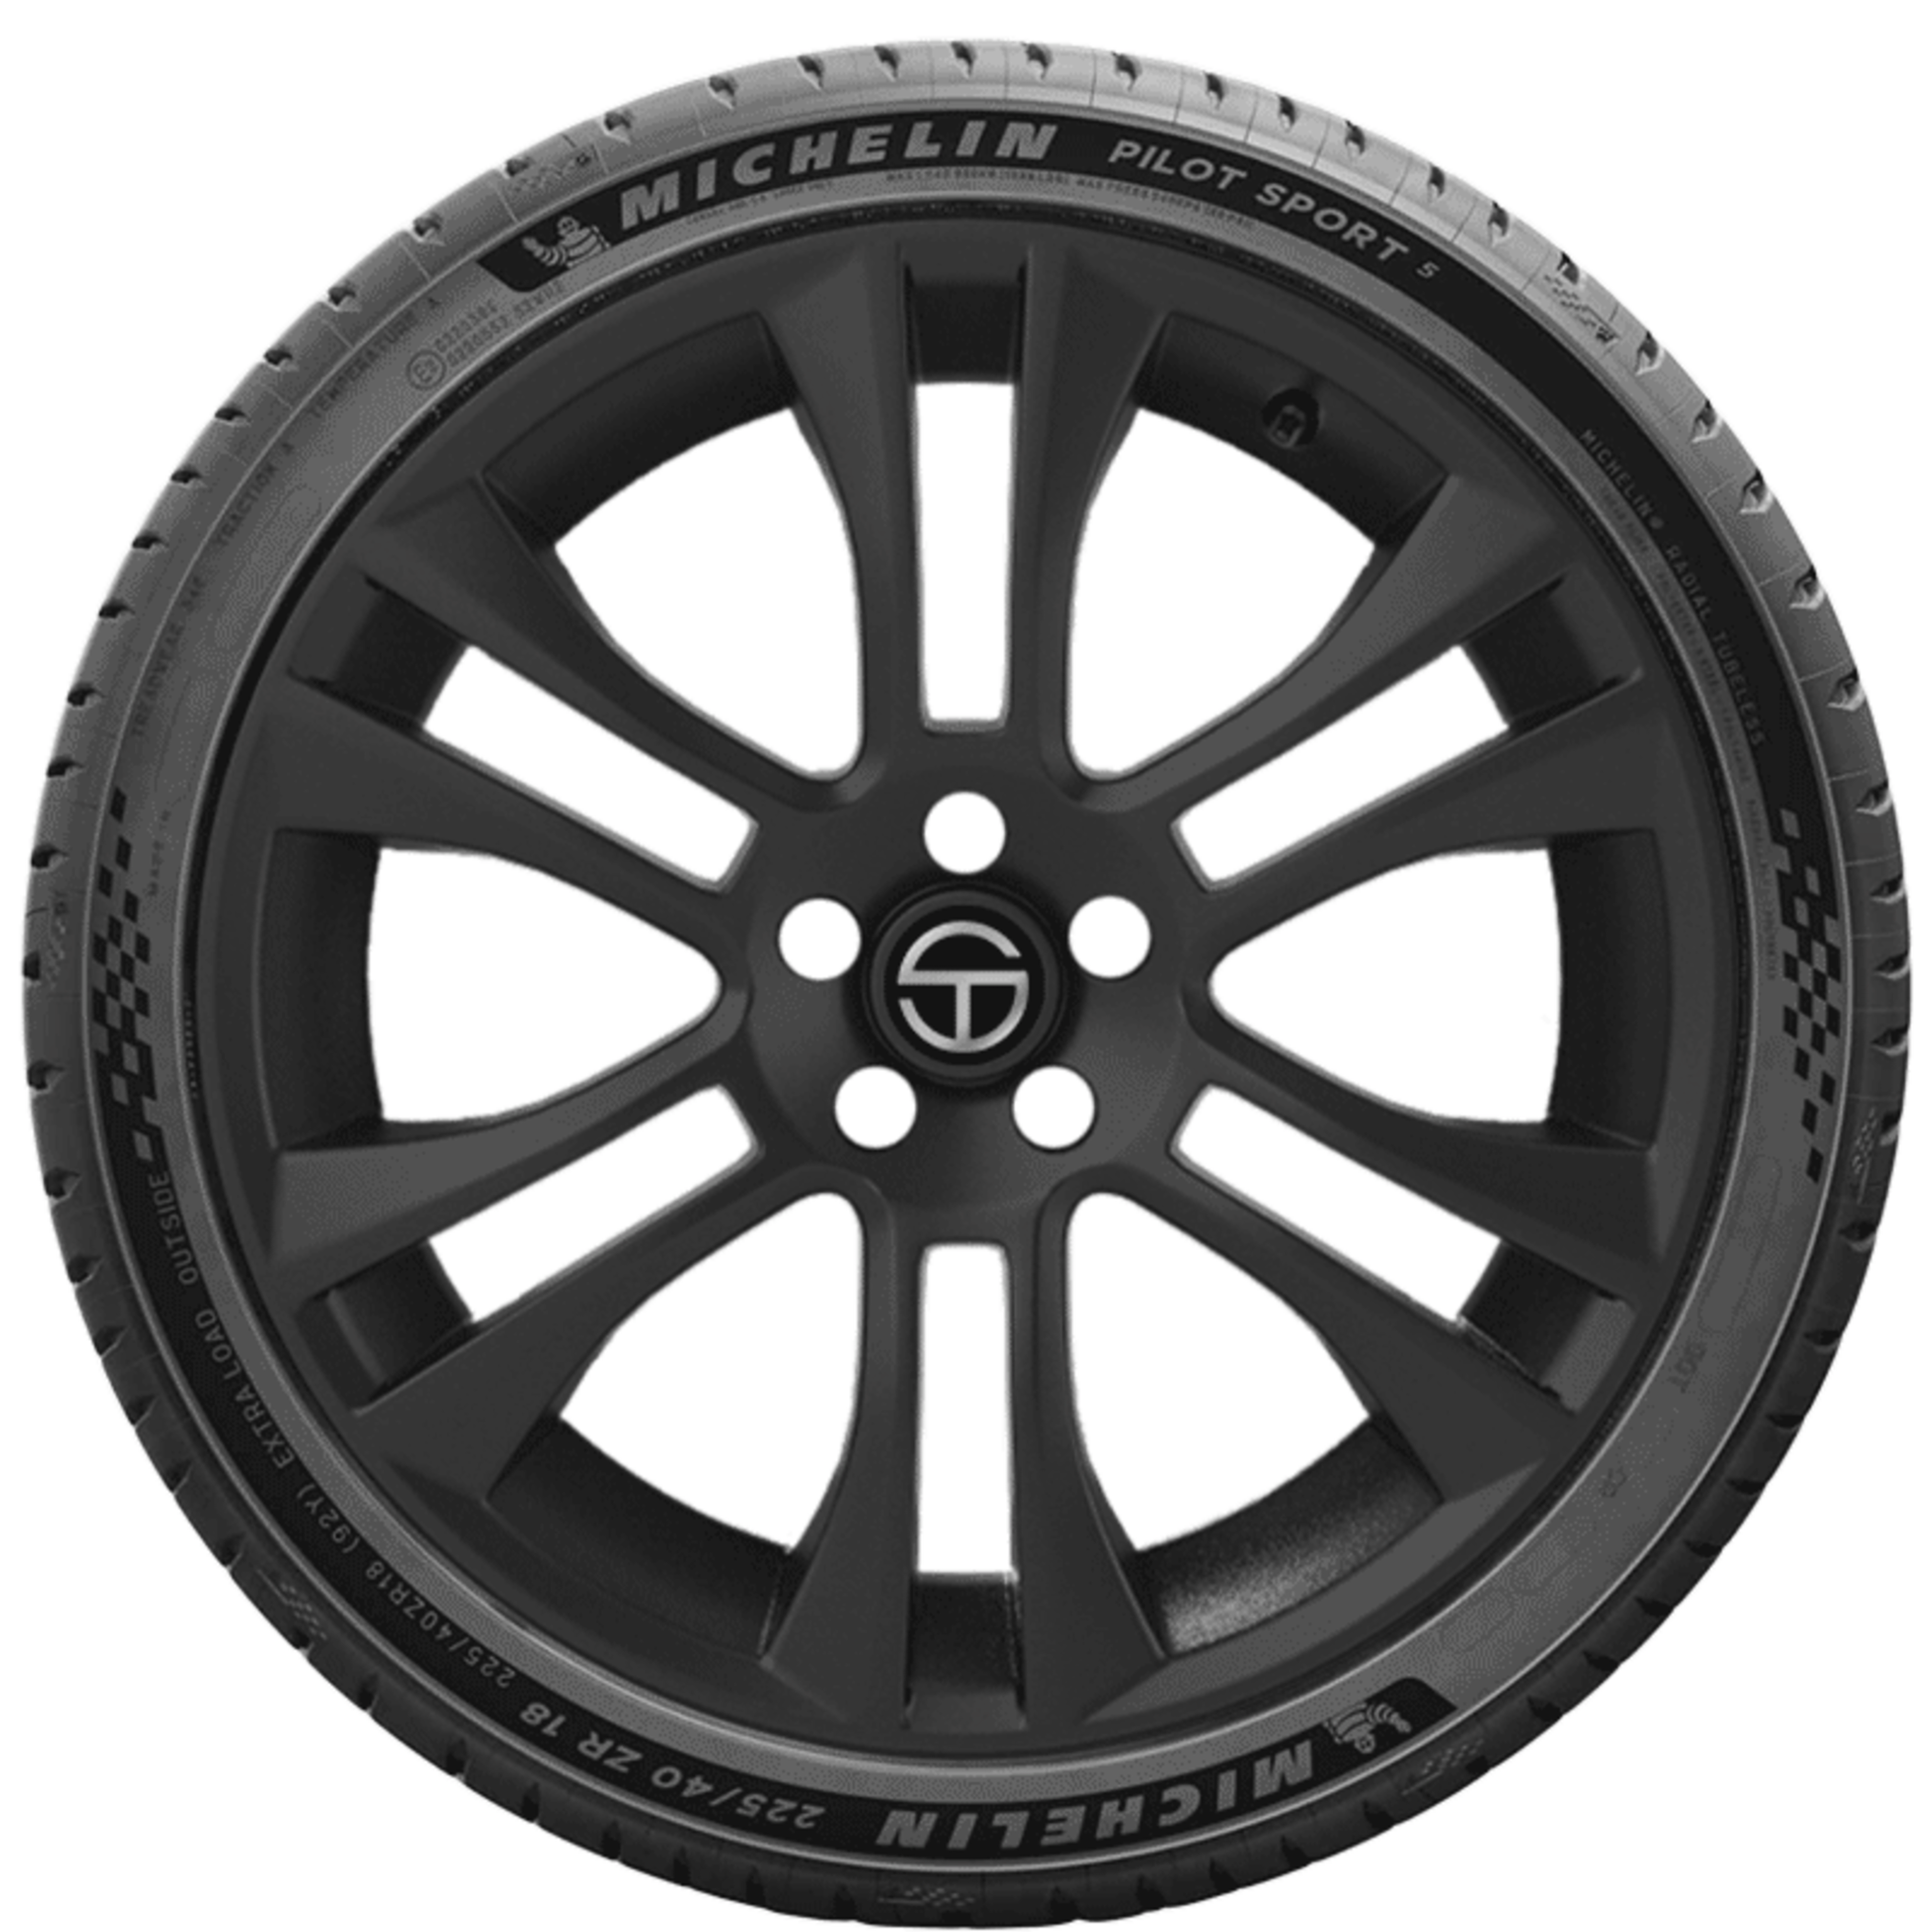 Voorwaarden Aanleg Doordringen Buy Michelin Pilot Sport 5 Tires Online | SimpleTire